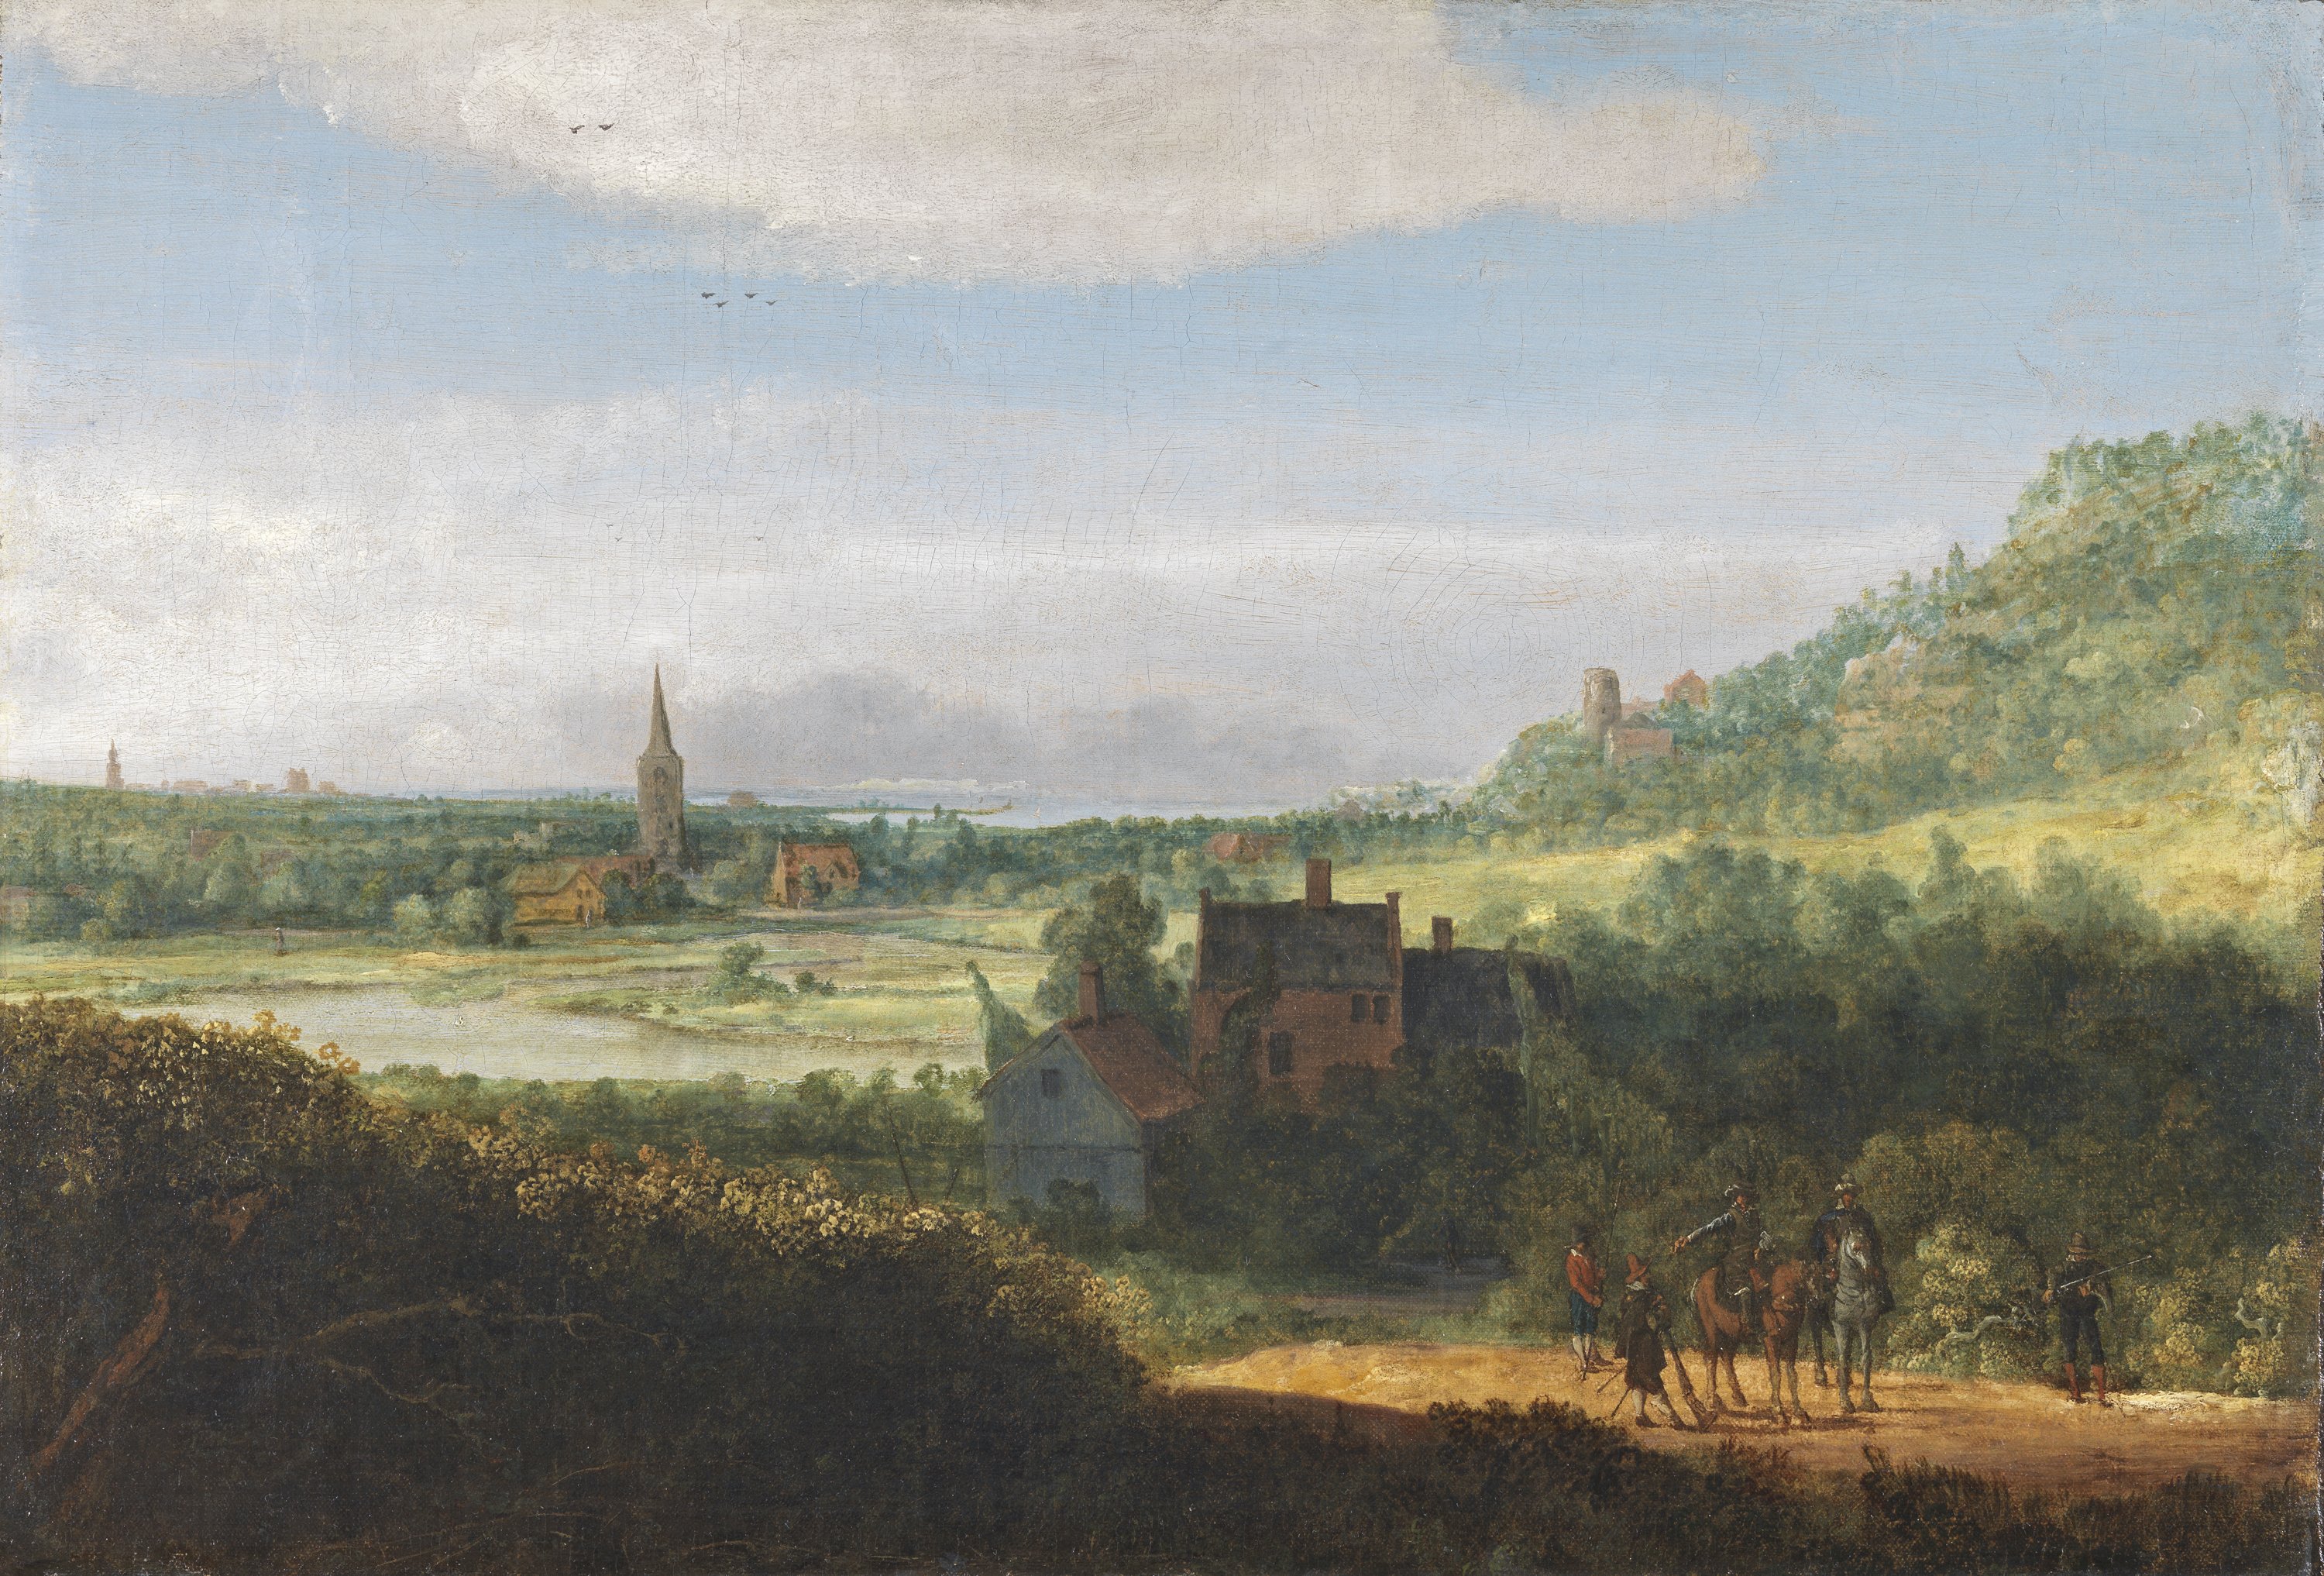 Landscape with Armed Men. Paisaje con hombres armados, década 1620